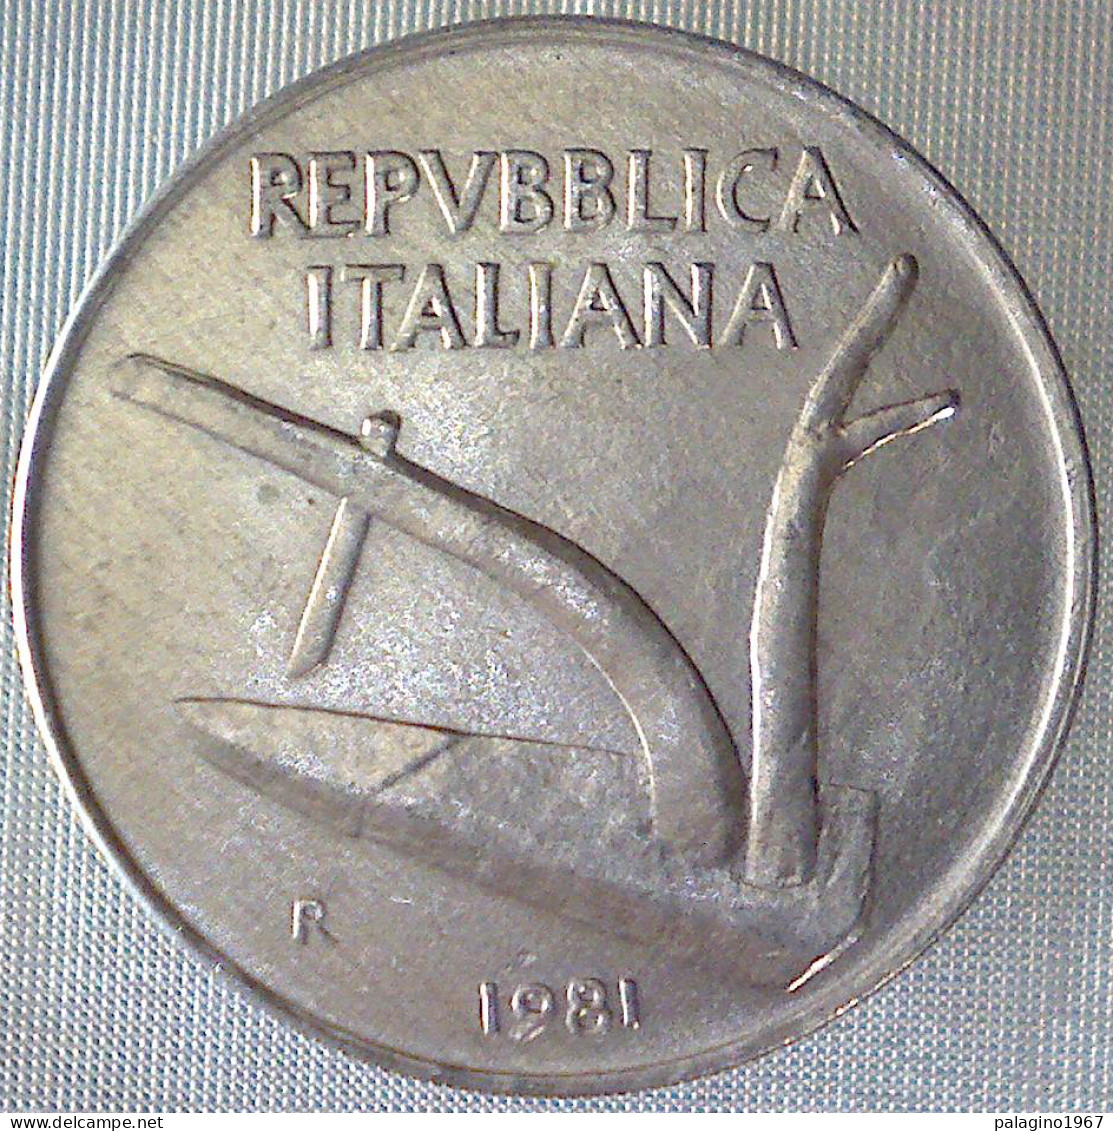 REPUBBLICA ITALIANA 10 Lire Spighe 1981 QFDC  - 10 Liras